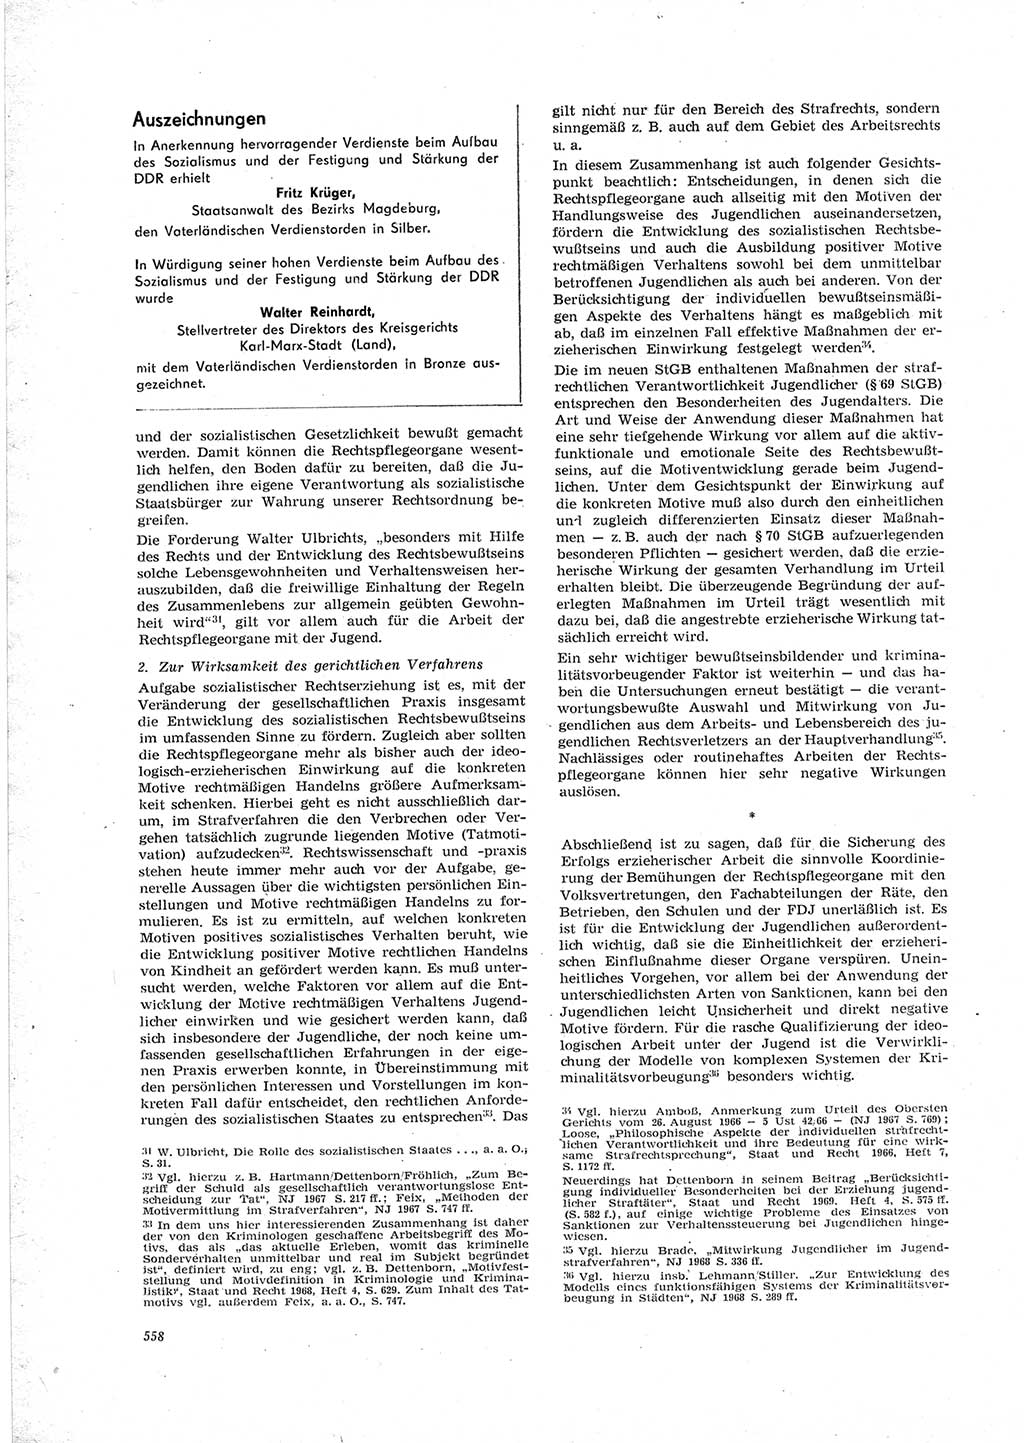 Neue Justiz (NJ), Zeitschrift für Recht und Rechtswissenschaft [Deutsche Demokratische Republik (DDR)], 23. Jahrgang 1969, Seite 558 (NJ DDR 1969, S. 558)